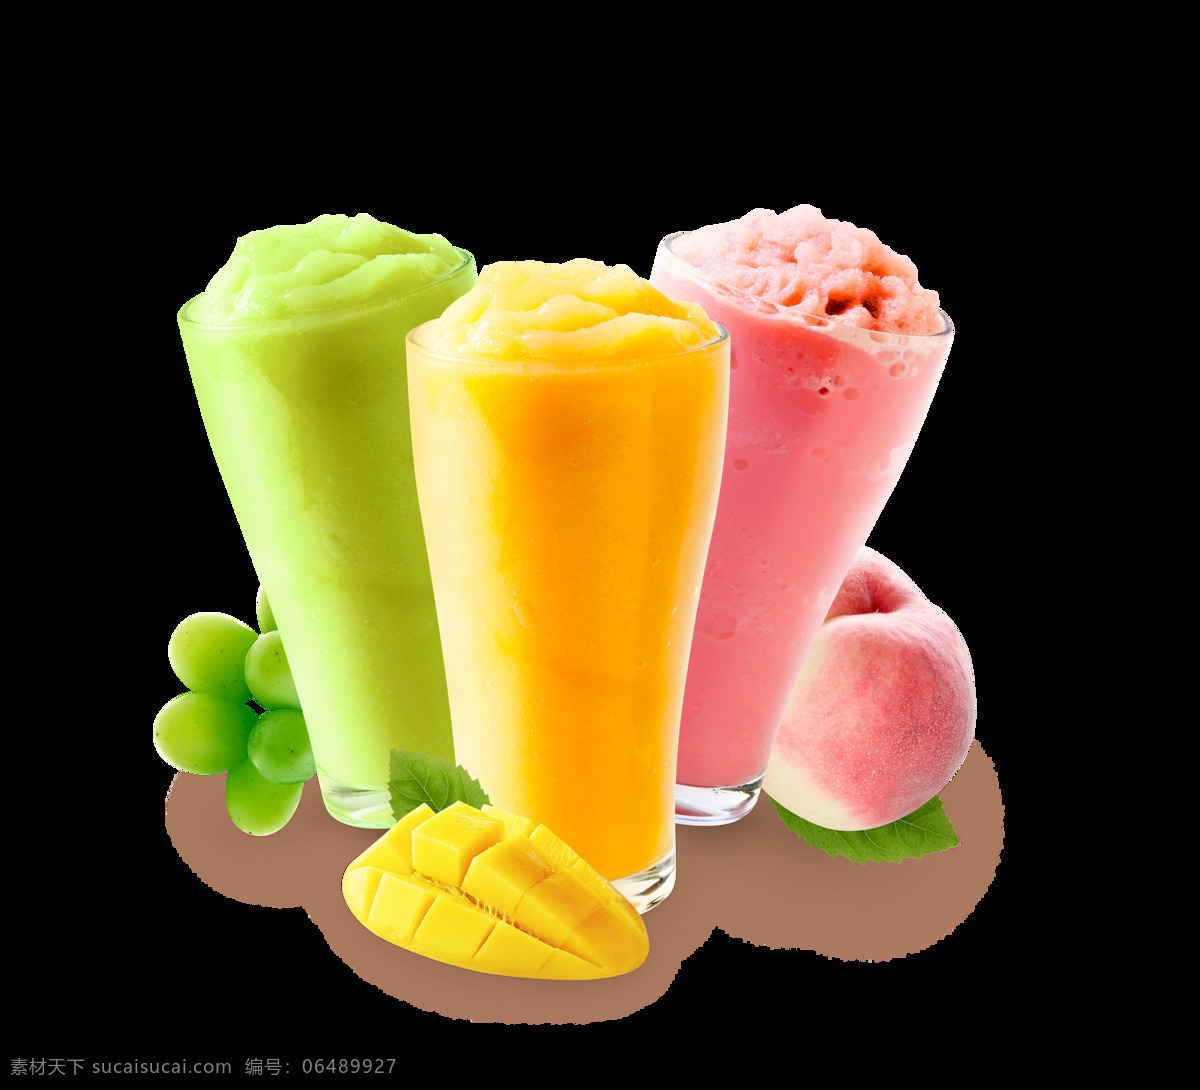 彩色 豆沙 冰 饮料 装饰 葡萄 夏季 豆沙冰 芒果 桃子 夏天 饮品